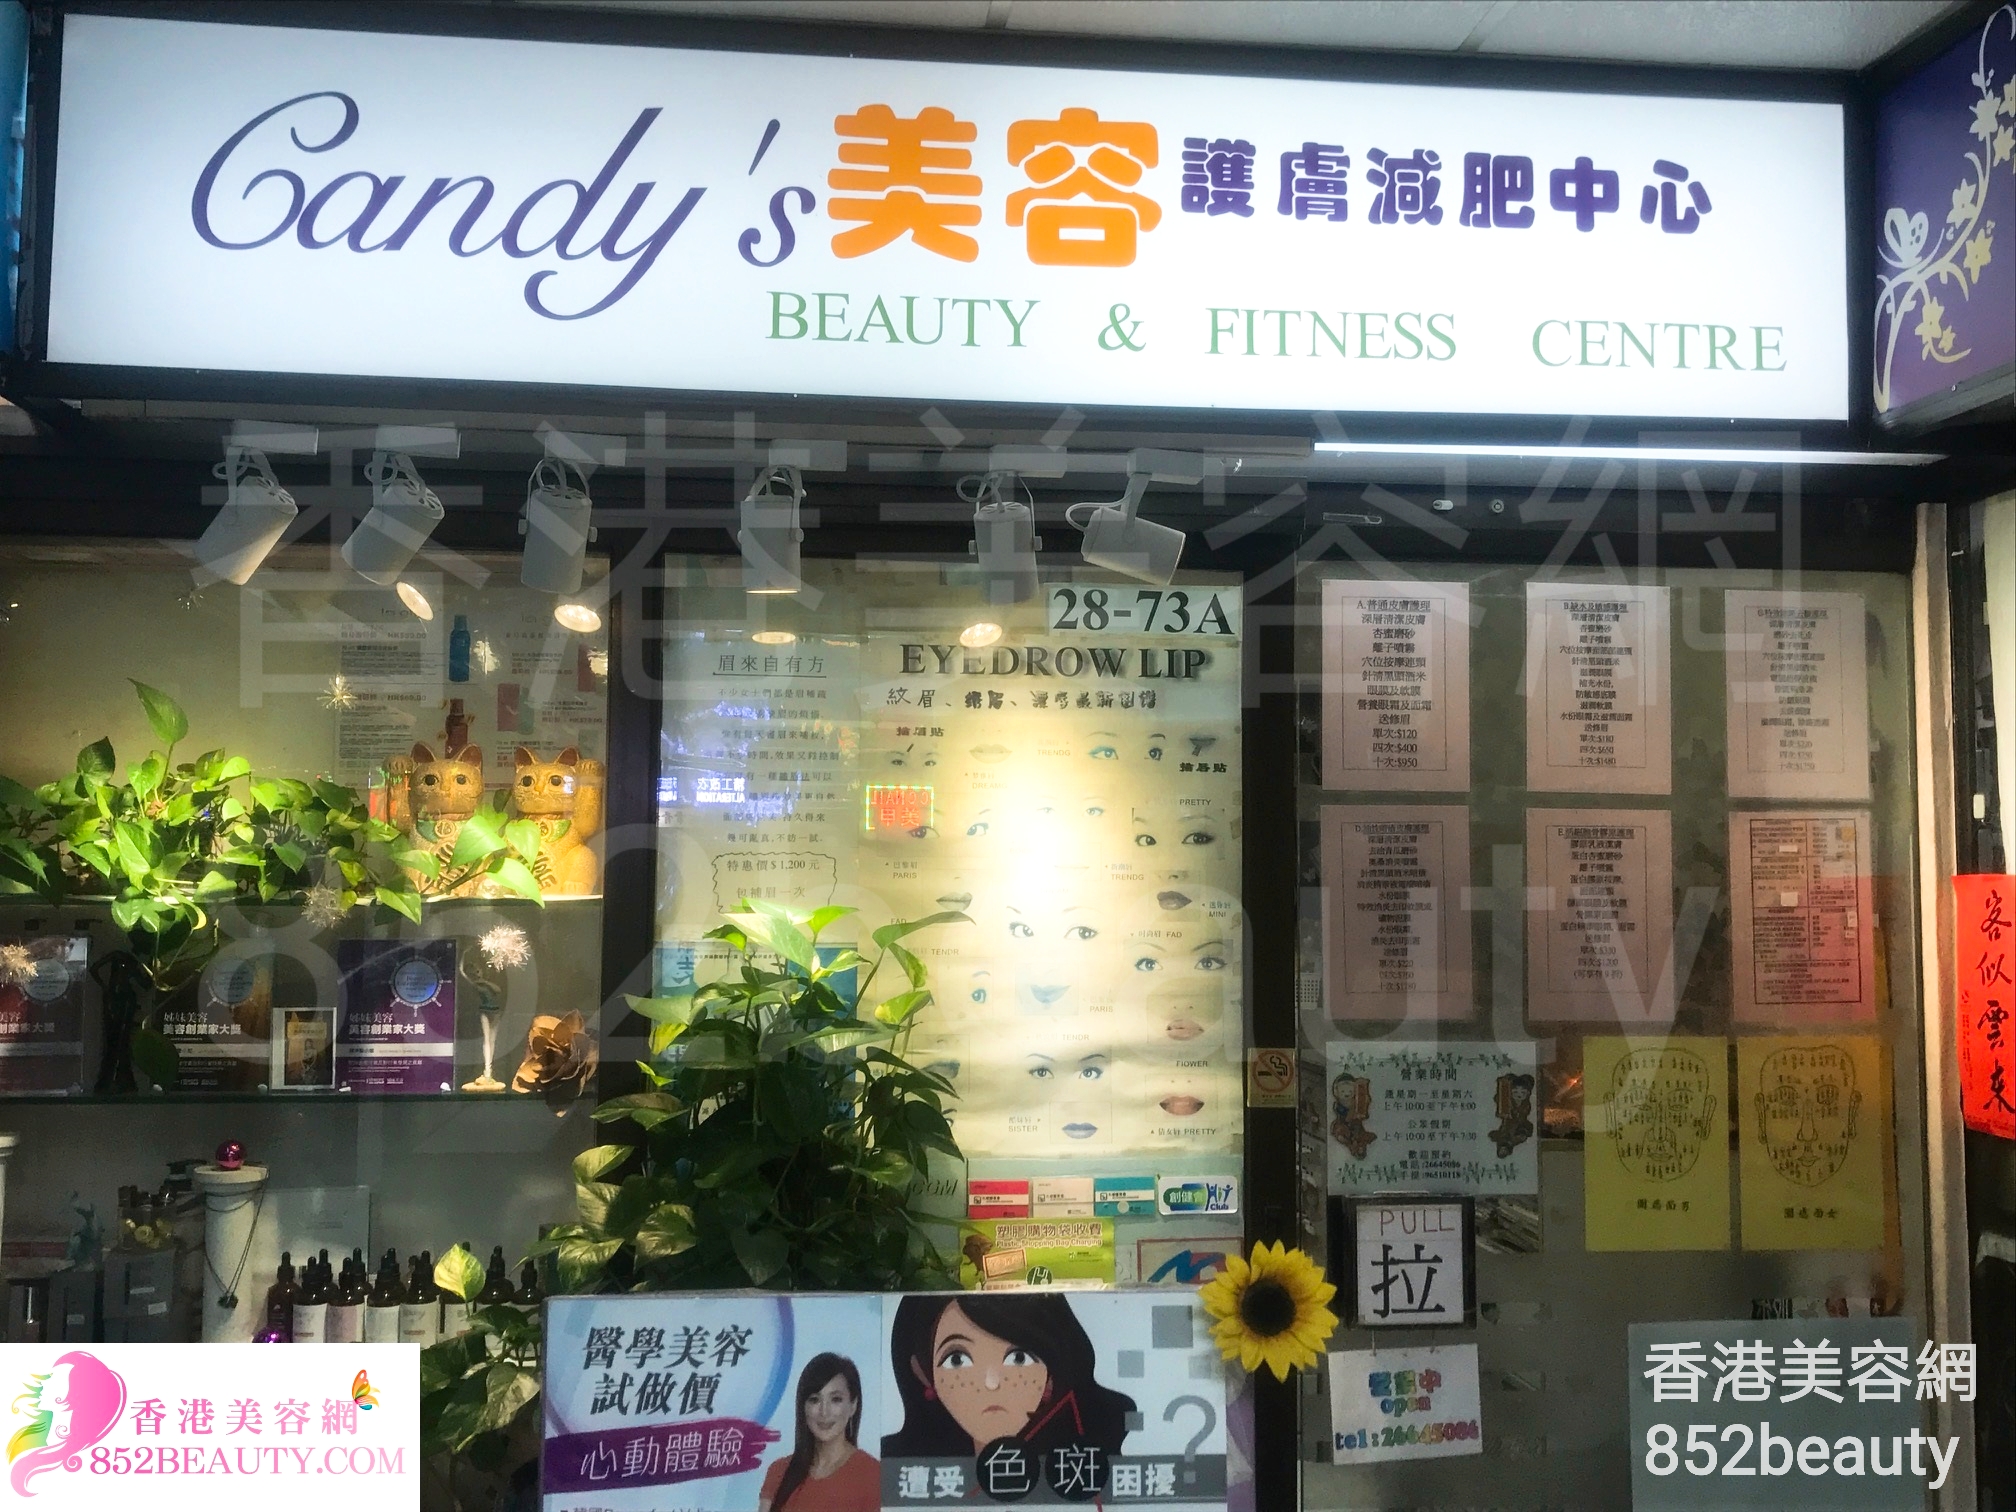 : Candy's 美容護膚減肥中心